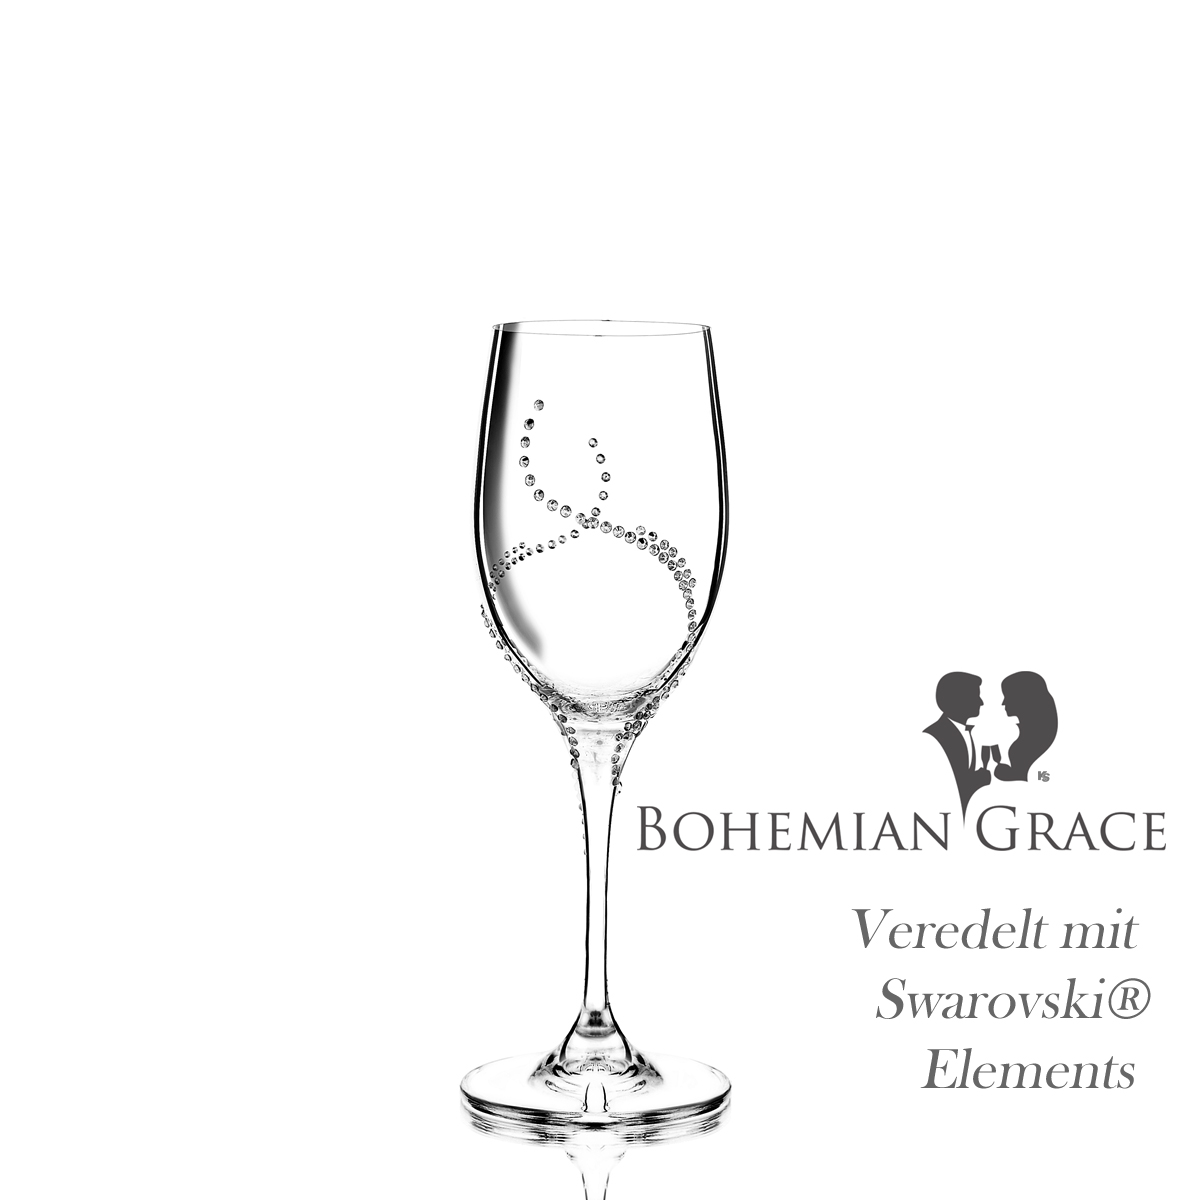 Weinglas 2Stk HARMONIA Bohemian Grace - Weissweingläser HARMONIA 2Stk, mit Swarovski Elements